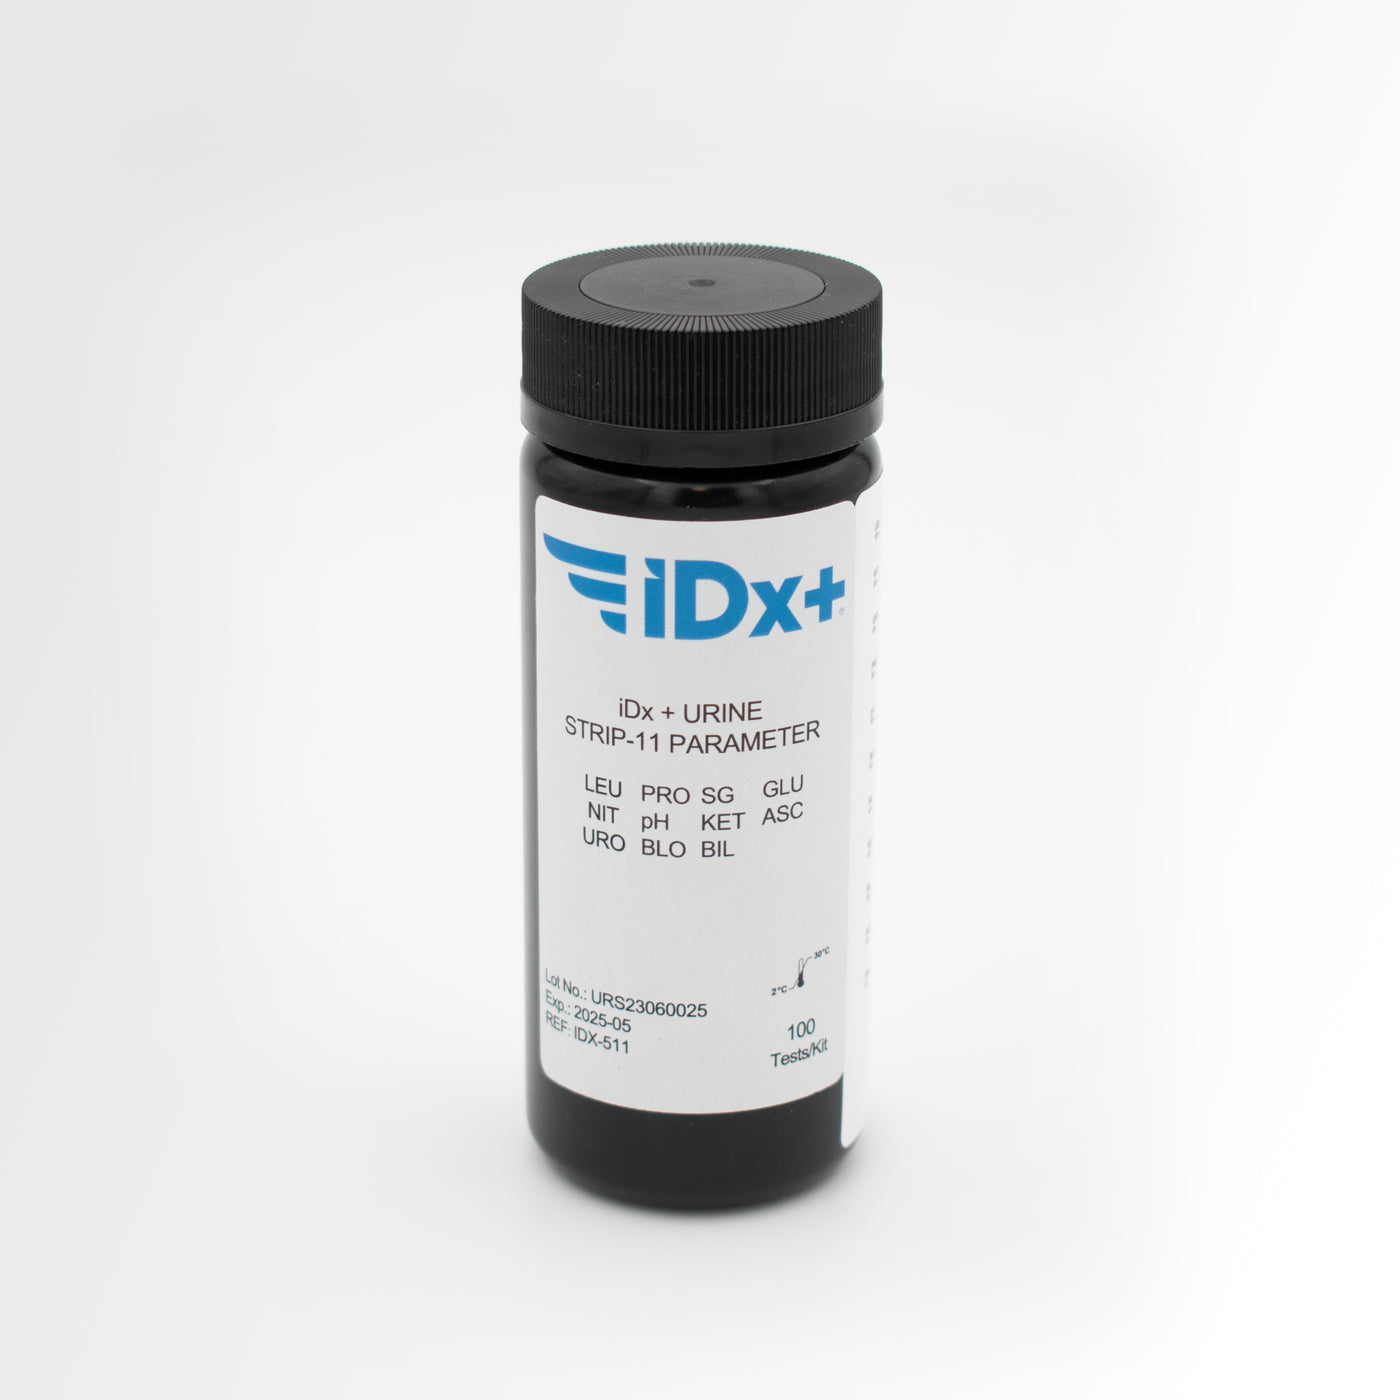 iDx + Urine Strip- 11 parameter